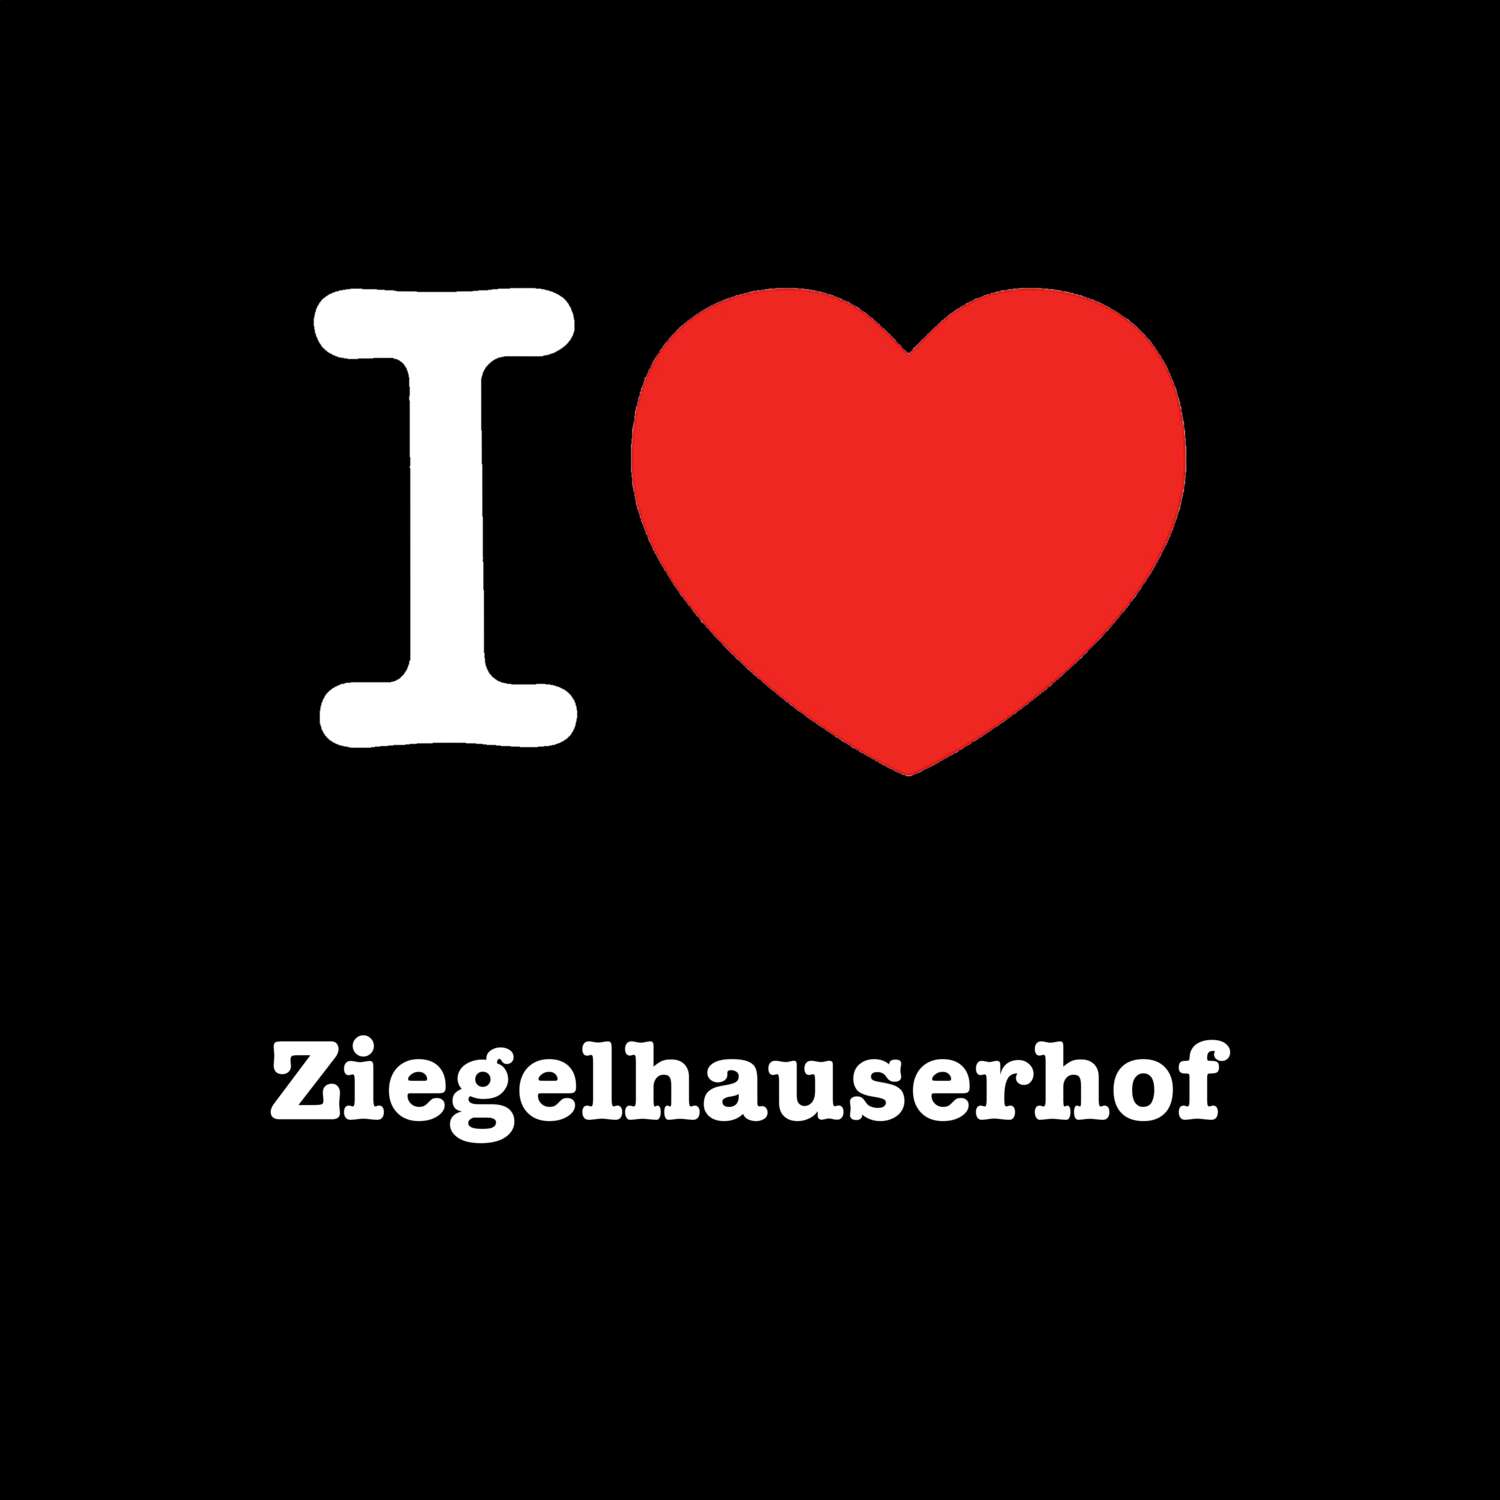 Ziegelhauserhof T-Shirt »I love«